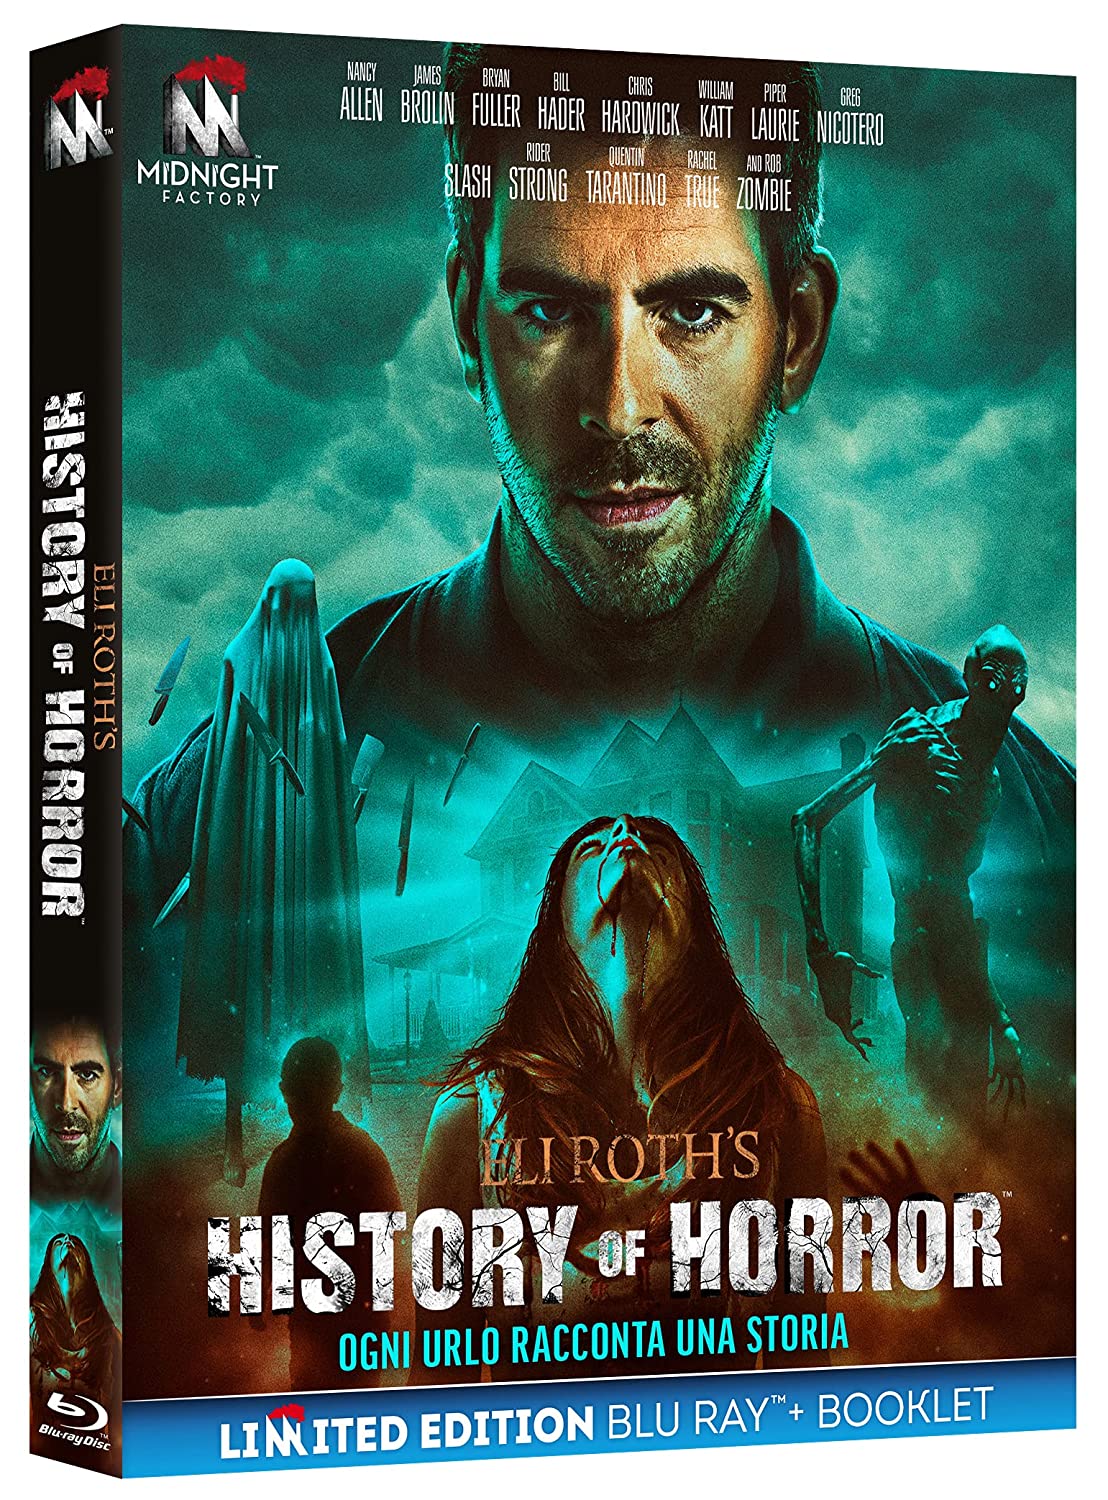 Eli Roth’s History of Horror con Midnight Factory la seconda stagione